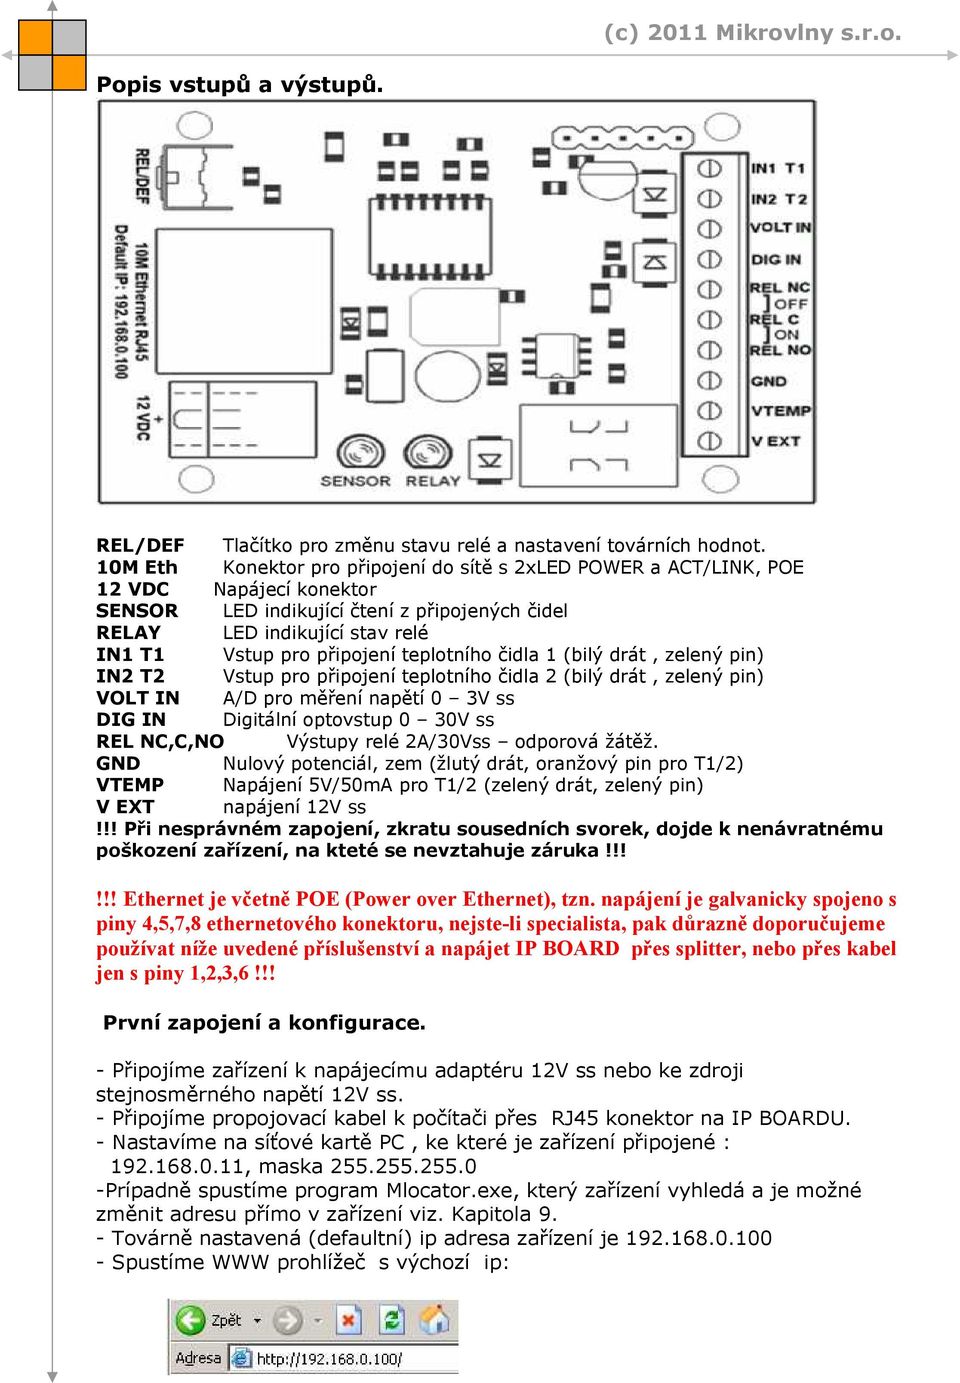 teplotního čidla 1 (bilý drát, zelený pin) IN2 T2 Vstup pro připojení teplotního čidla 2 (bilý drát, zelený pin) VOLT IN A/D pro měření napětí 0 3V ss DIG IN Digitální optovstup 0 30V ss REL NC,C,NO